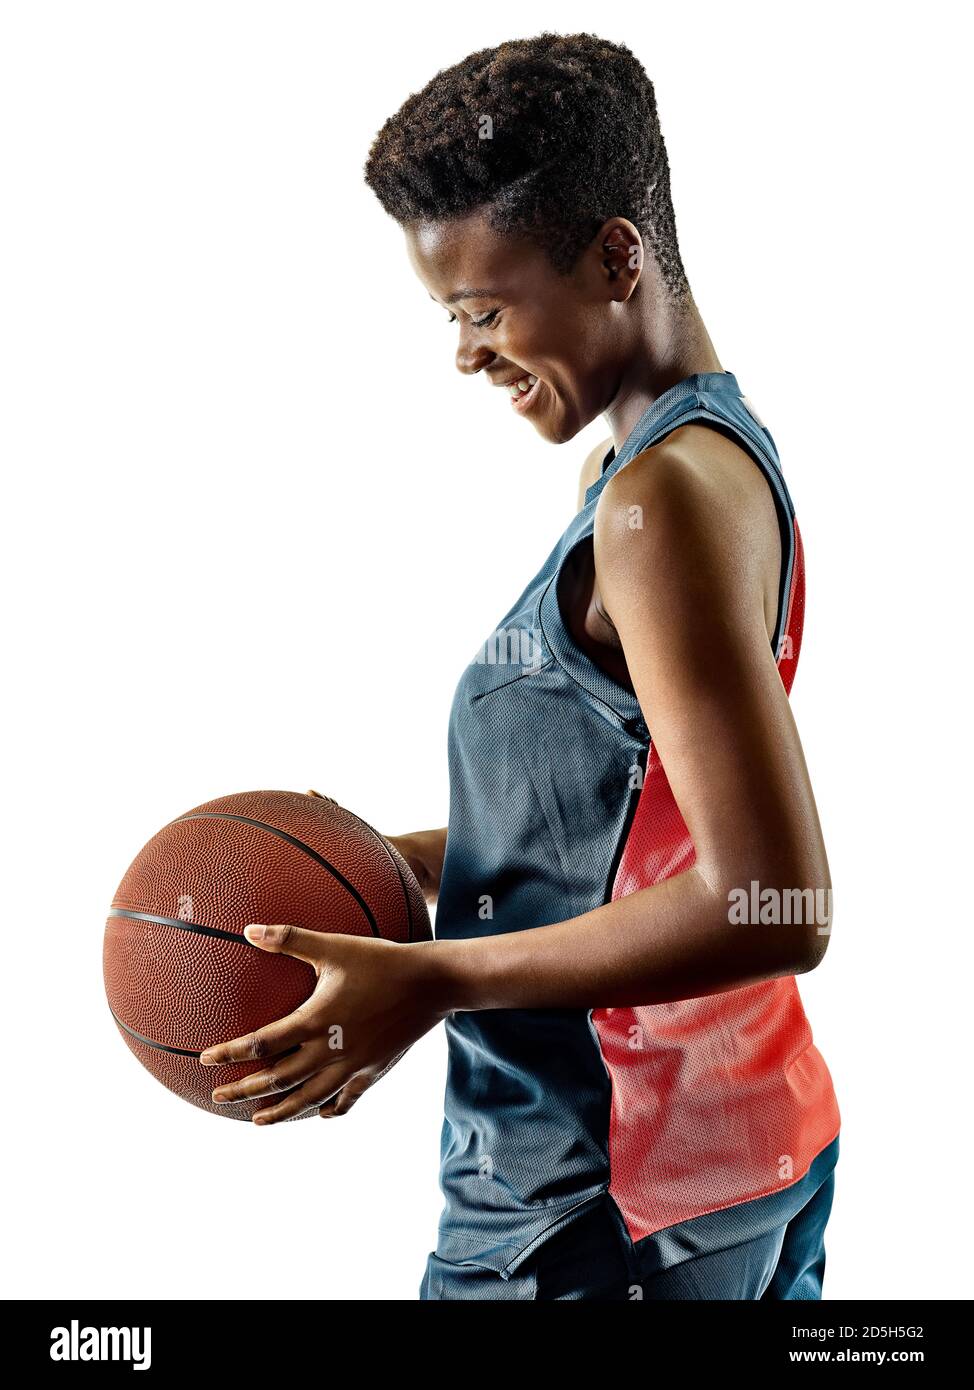 L'un des joueurs de basket de l'Afrique de l'adolescent femme fille isolée sur fond blanc avec des ombres Banque D'Images